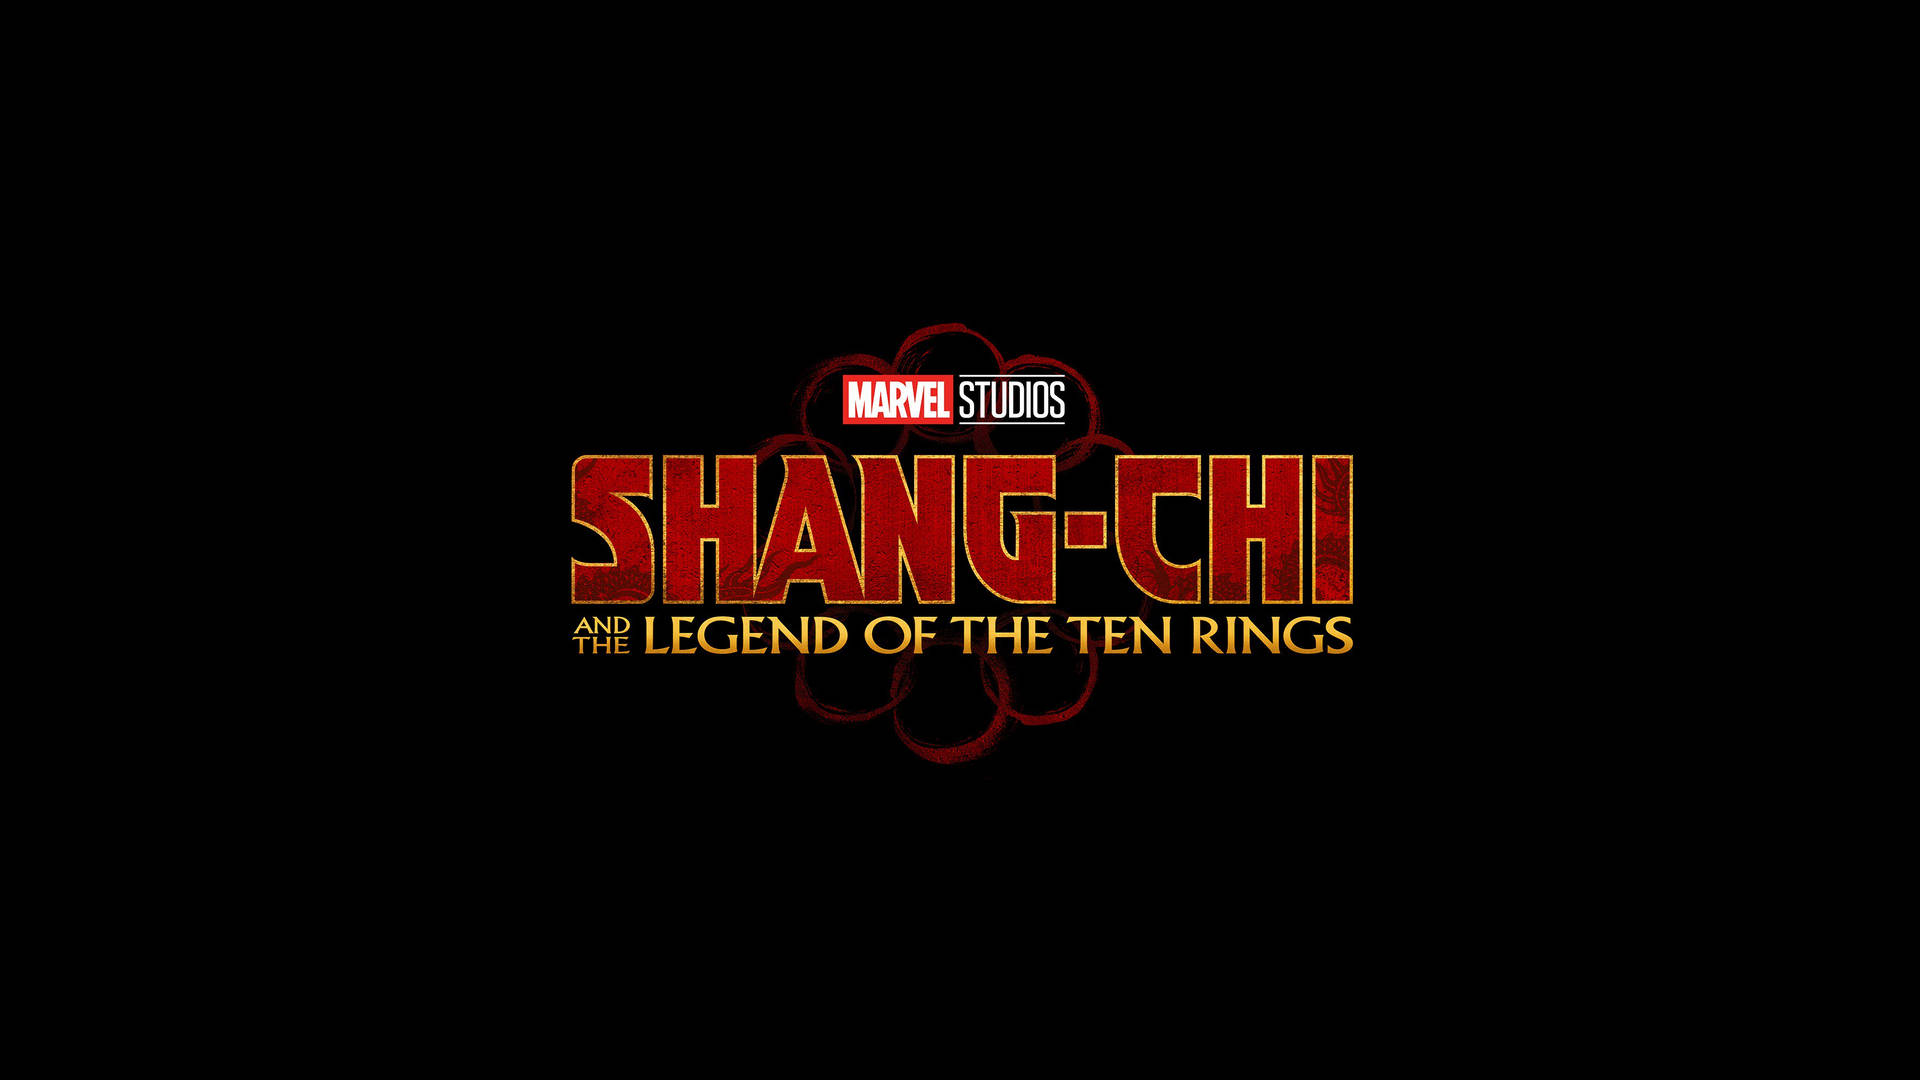 Shangchi Y La Leyenda De Los Diez Anillos Póster De Marvel Fondo de pantalla